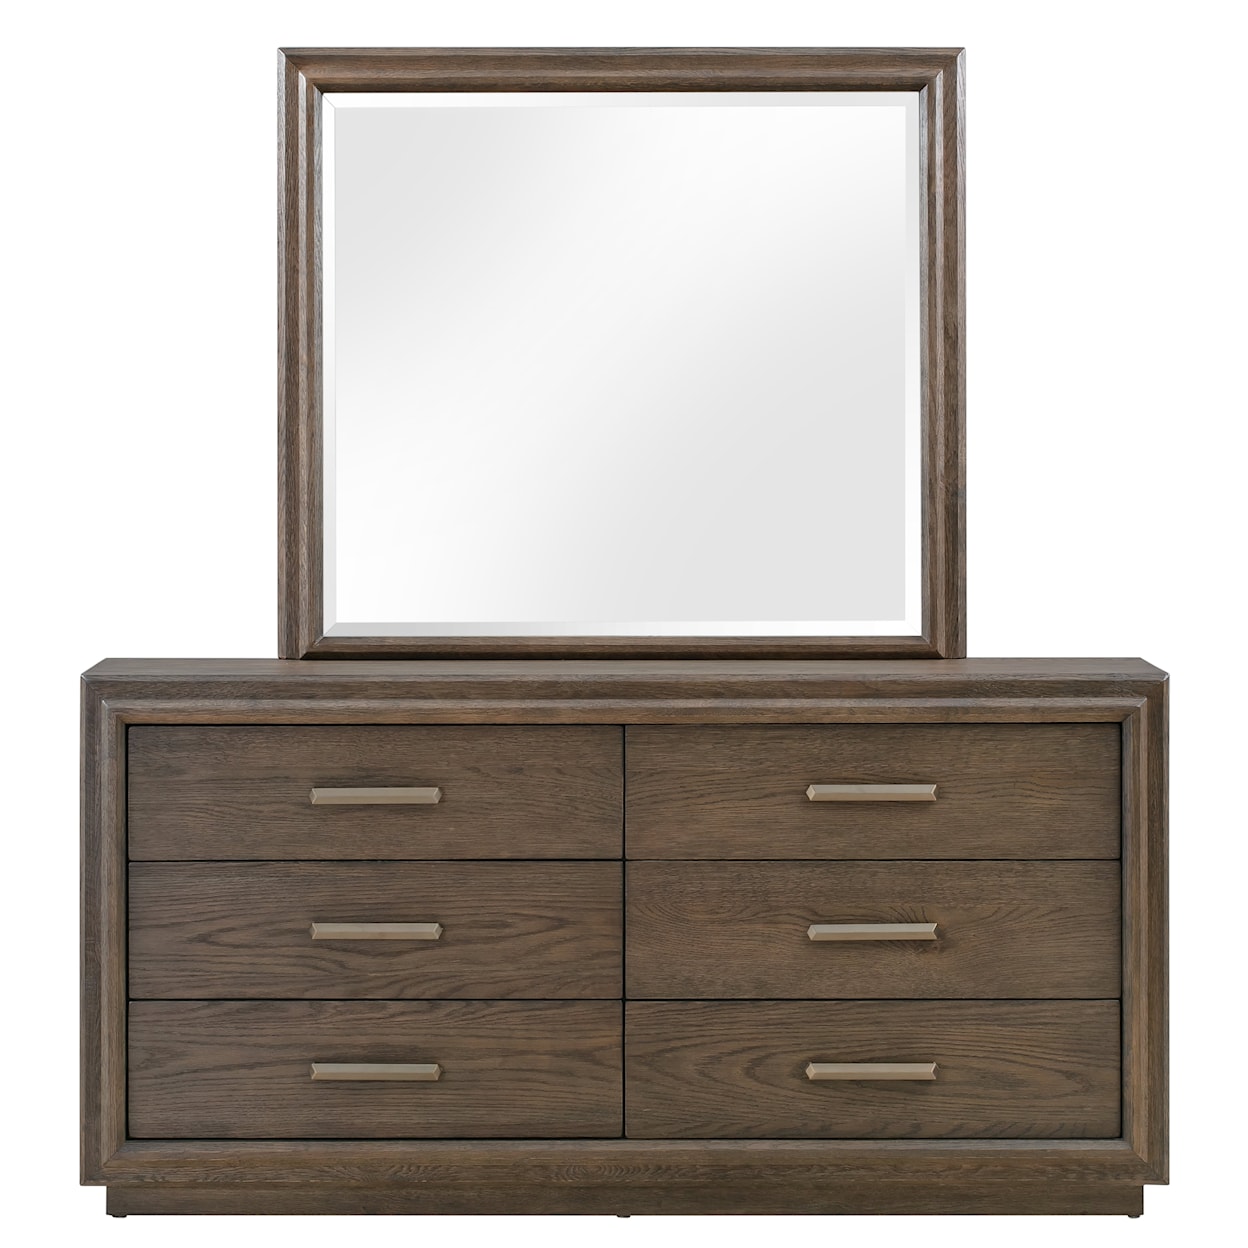 Modus International Lawson Solid Oak Mirror